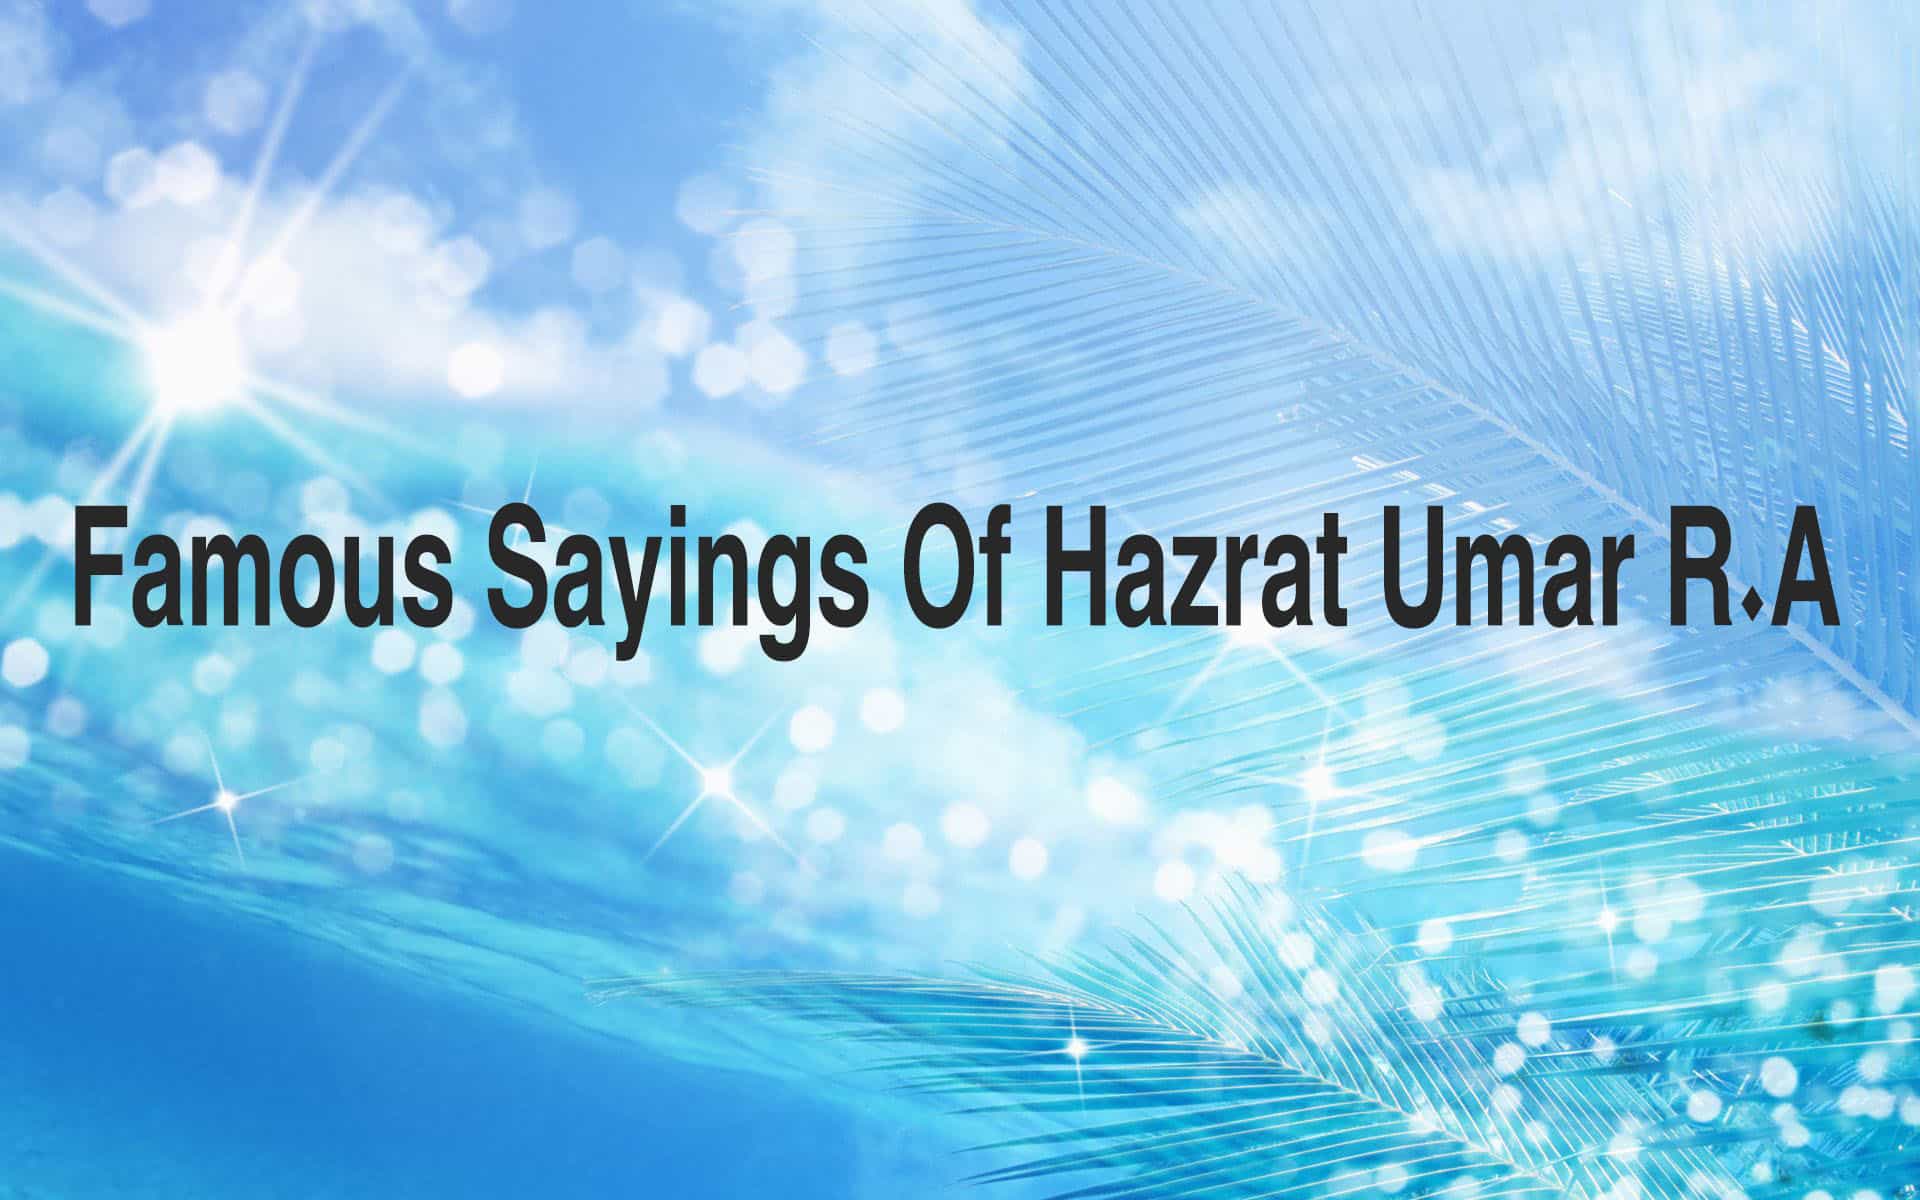 saying of Hazrat Omar R A